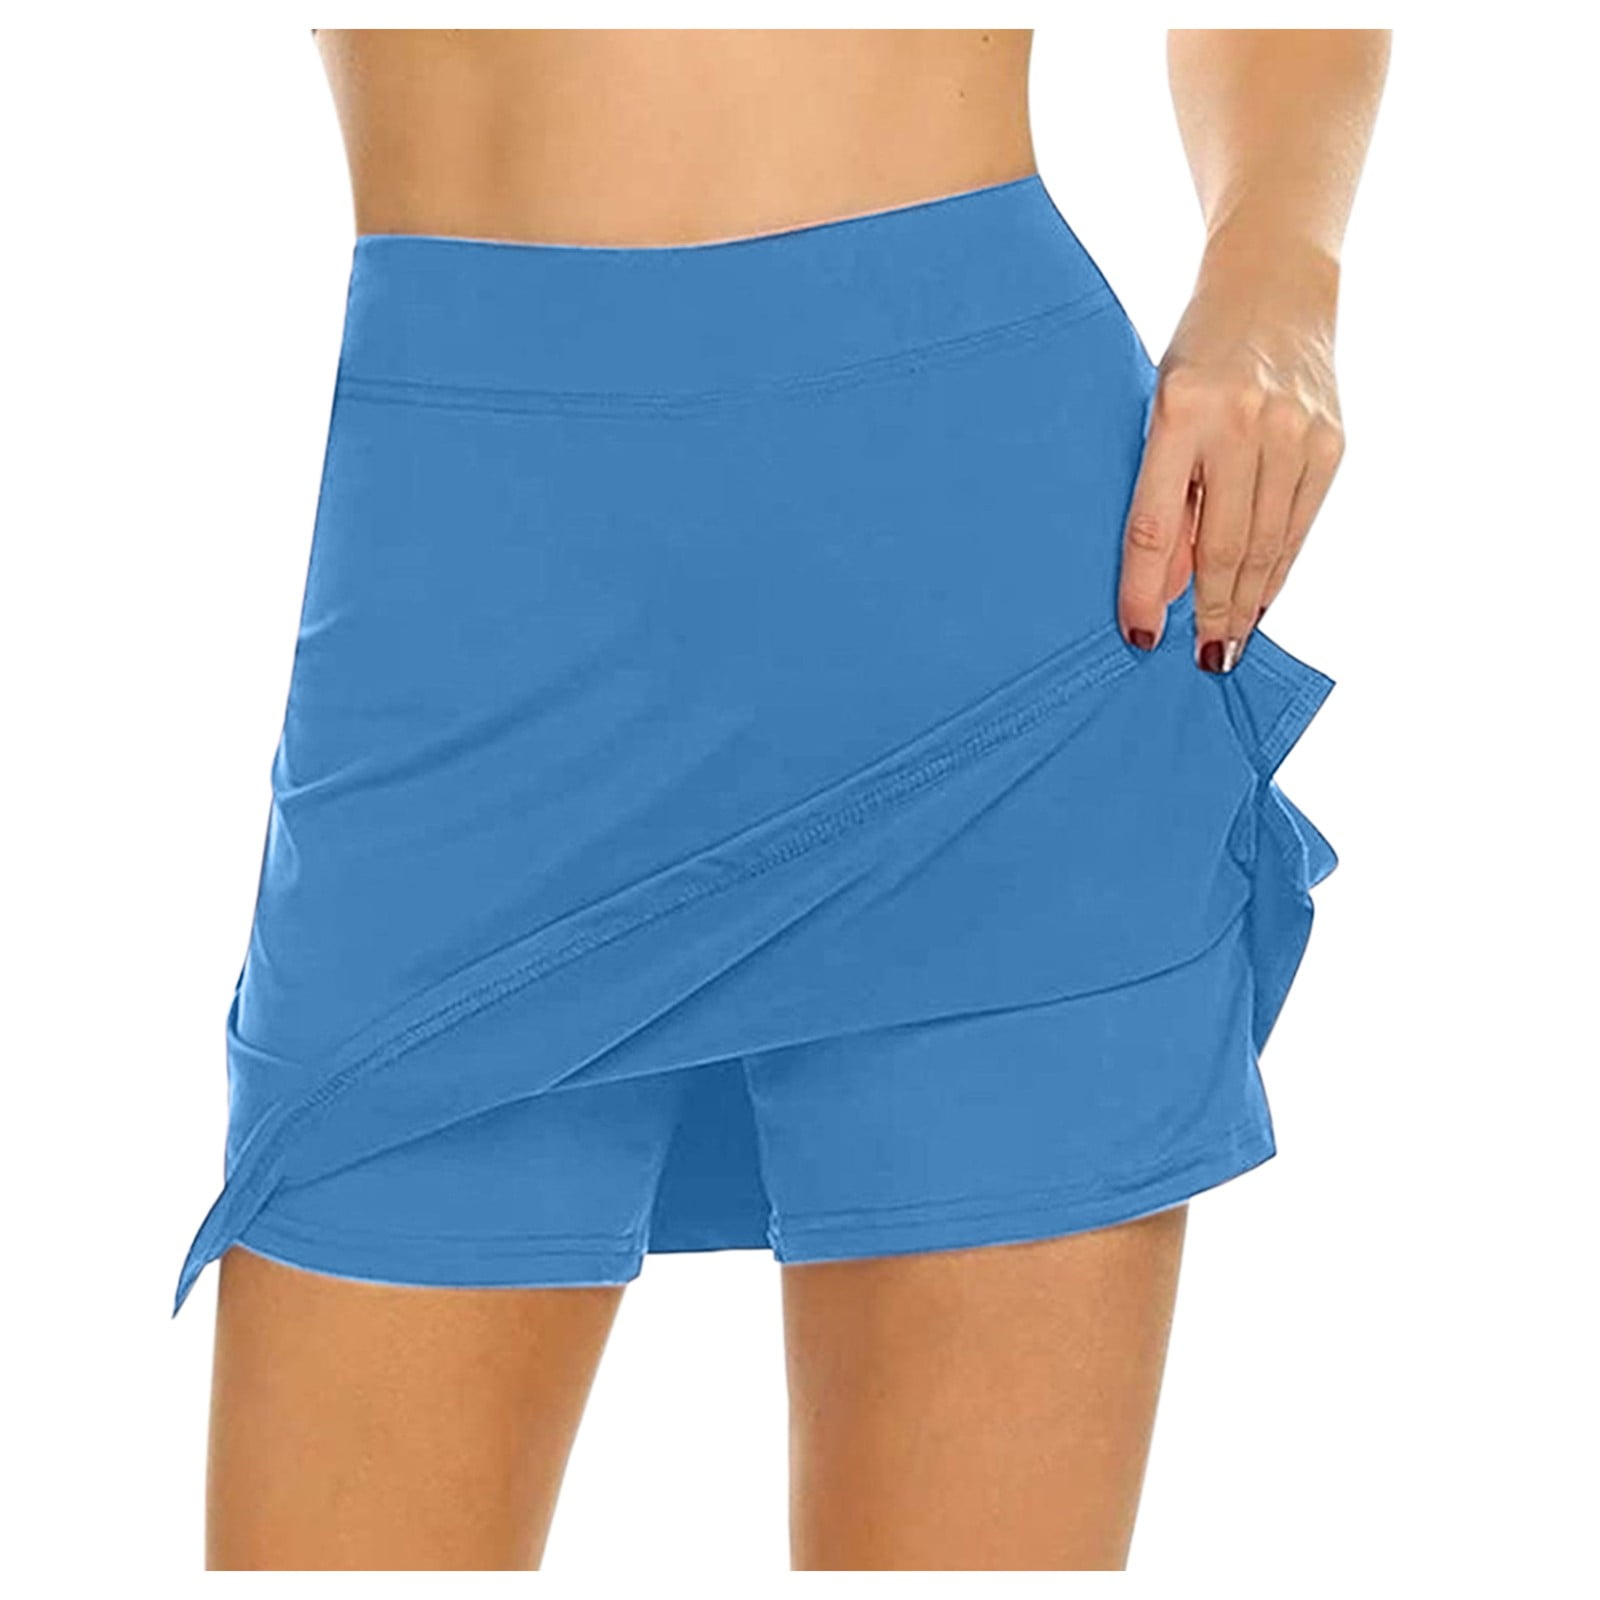 Mrat Skirts For Women Ladies Active Performance Skort Lightweight Skirt for Running Tennis Golf Sport Female Swing Skirt with Pocket